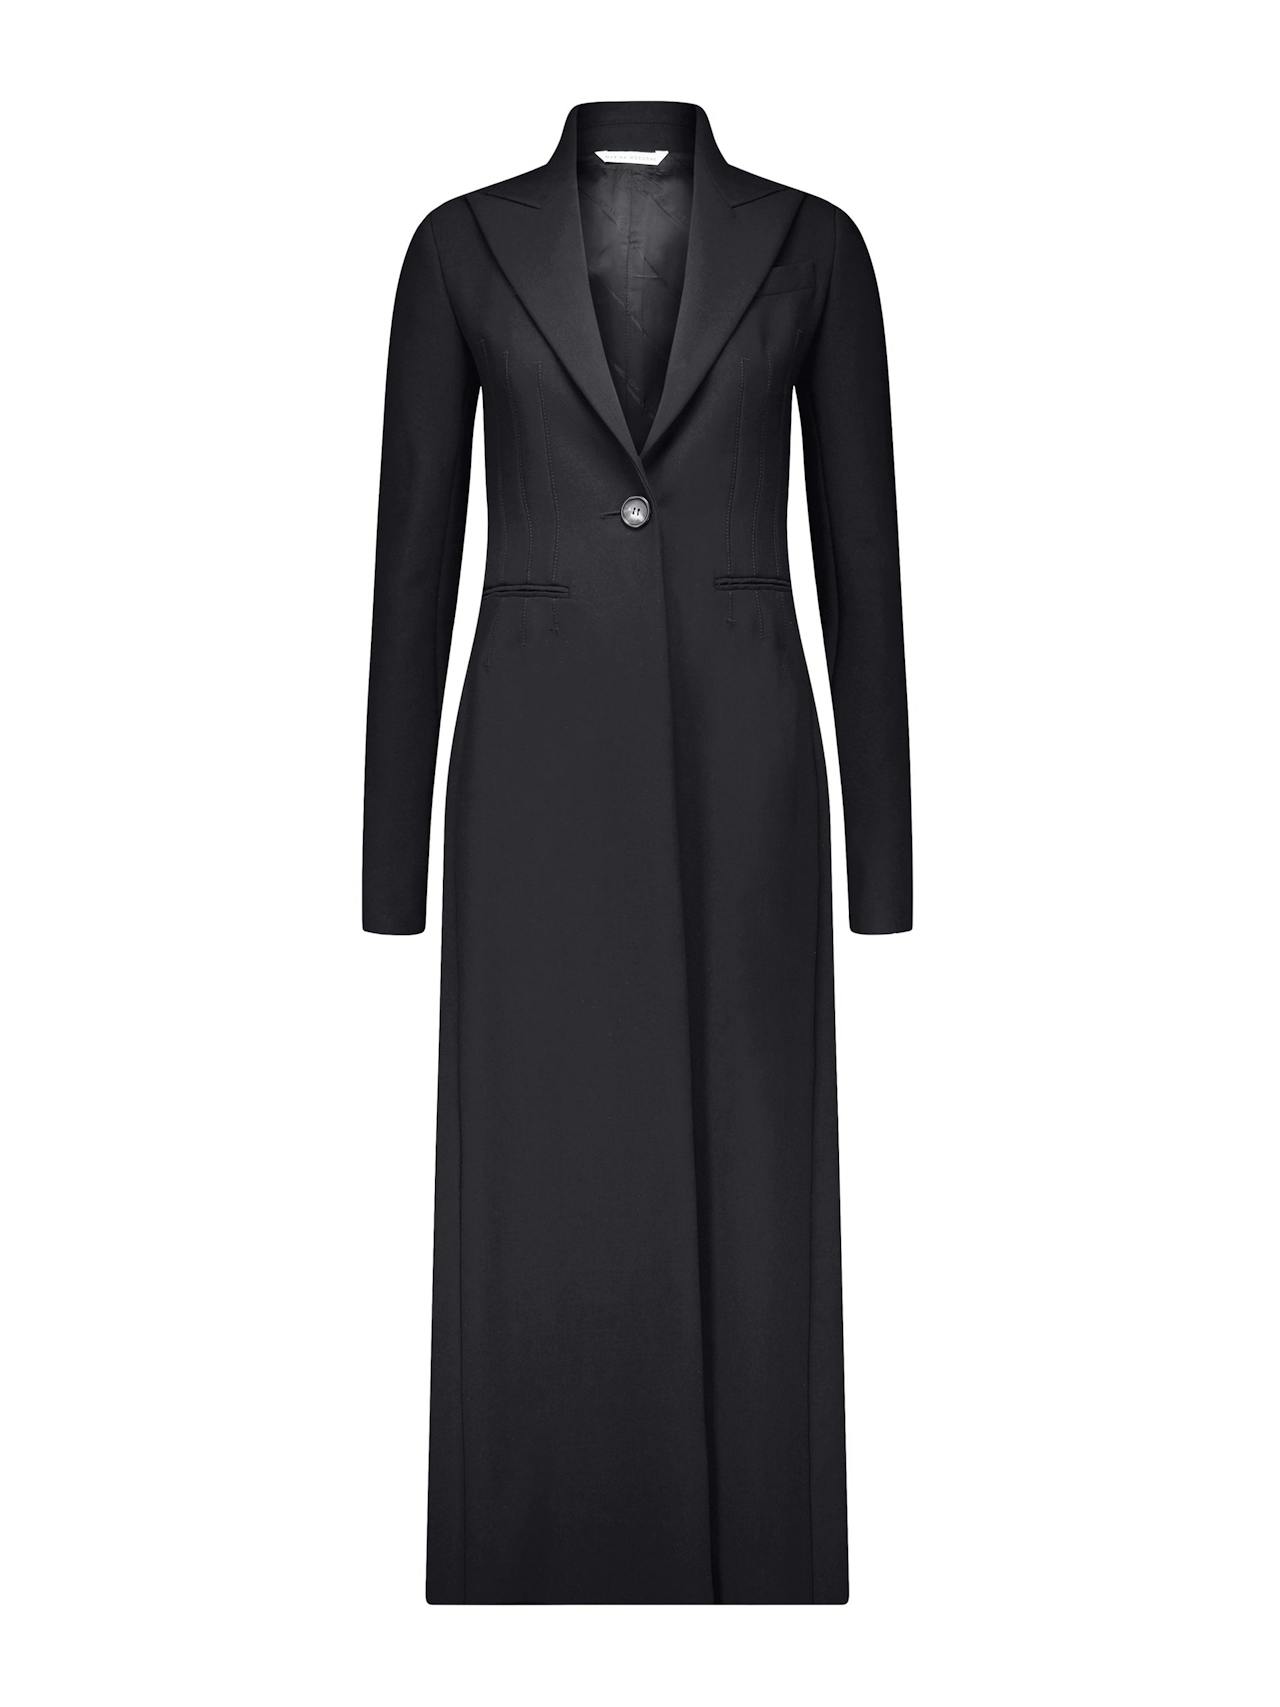 Black tailored coat